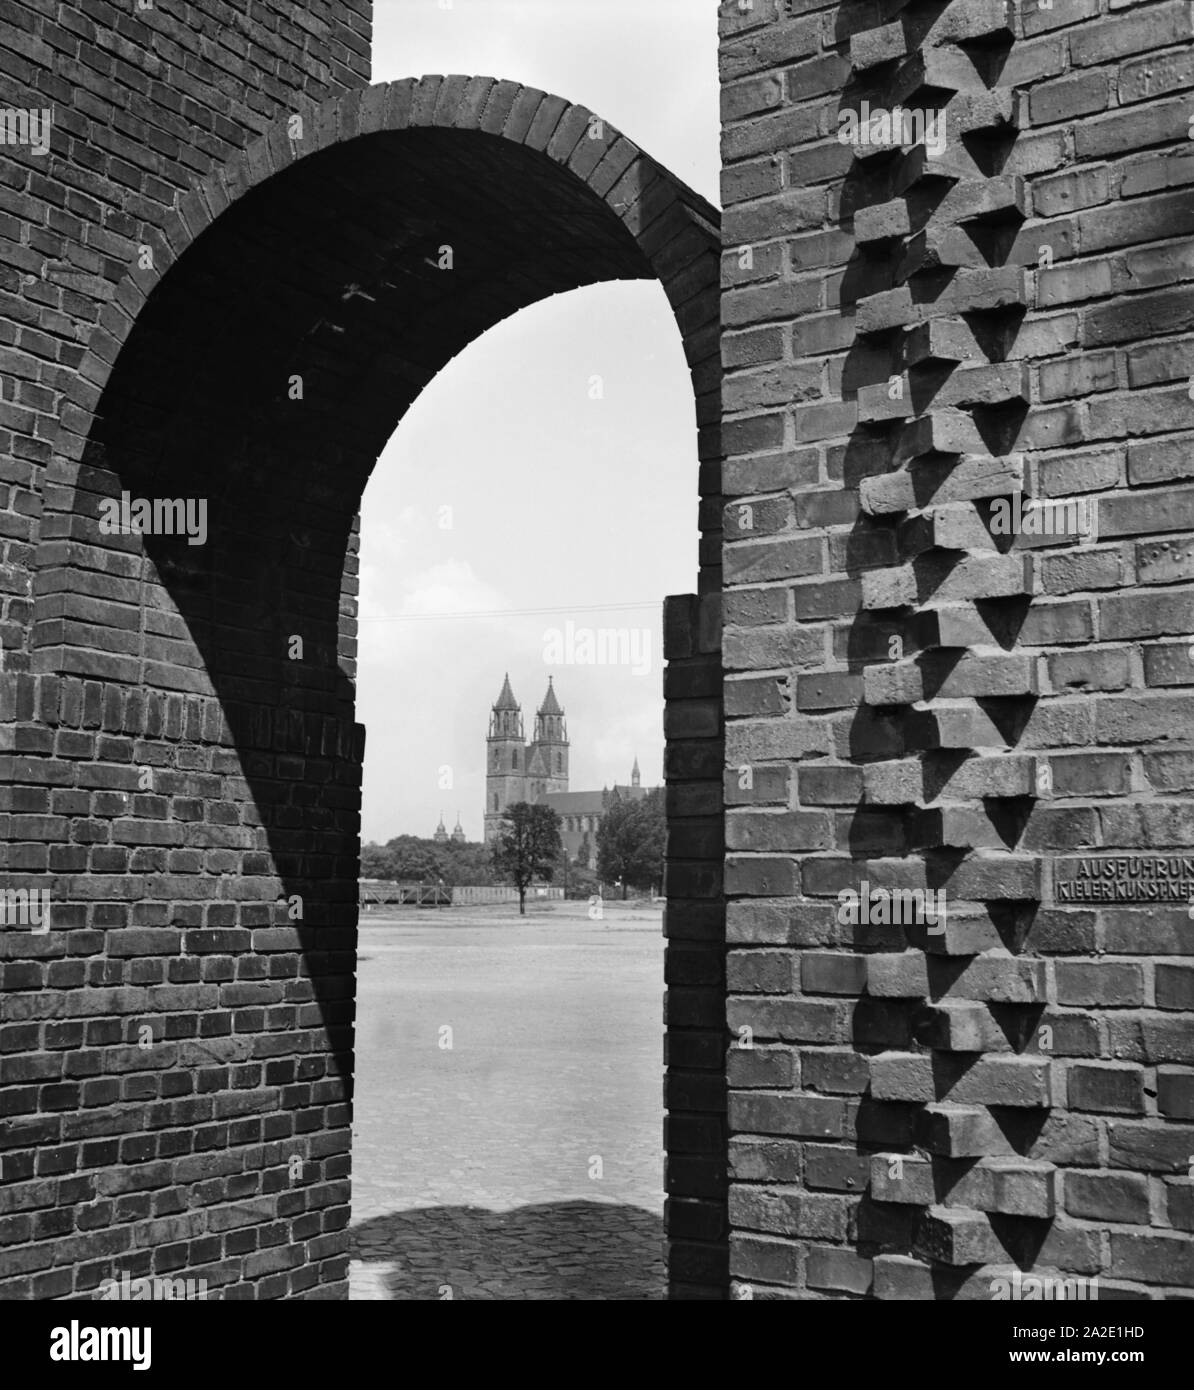 Blick durch einen Torbogen auf den Dom zu Magdeburg, Deutschland 1930er Jahre. Vista attraverso un arco alla Cattedrale di Magdeburgo, Germania 1930s. Foto Stock